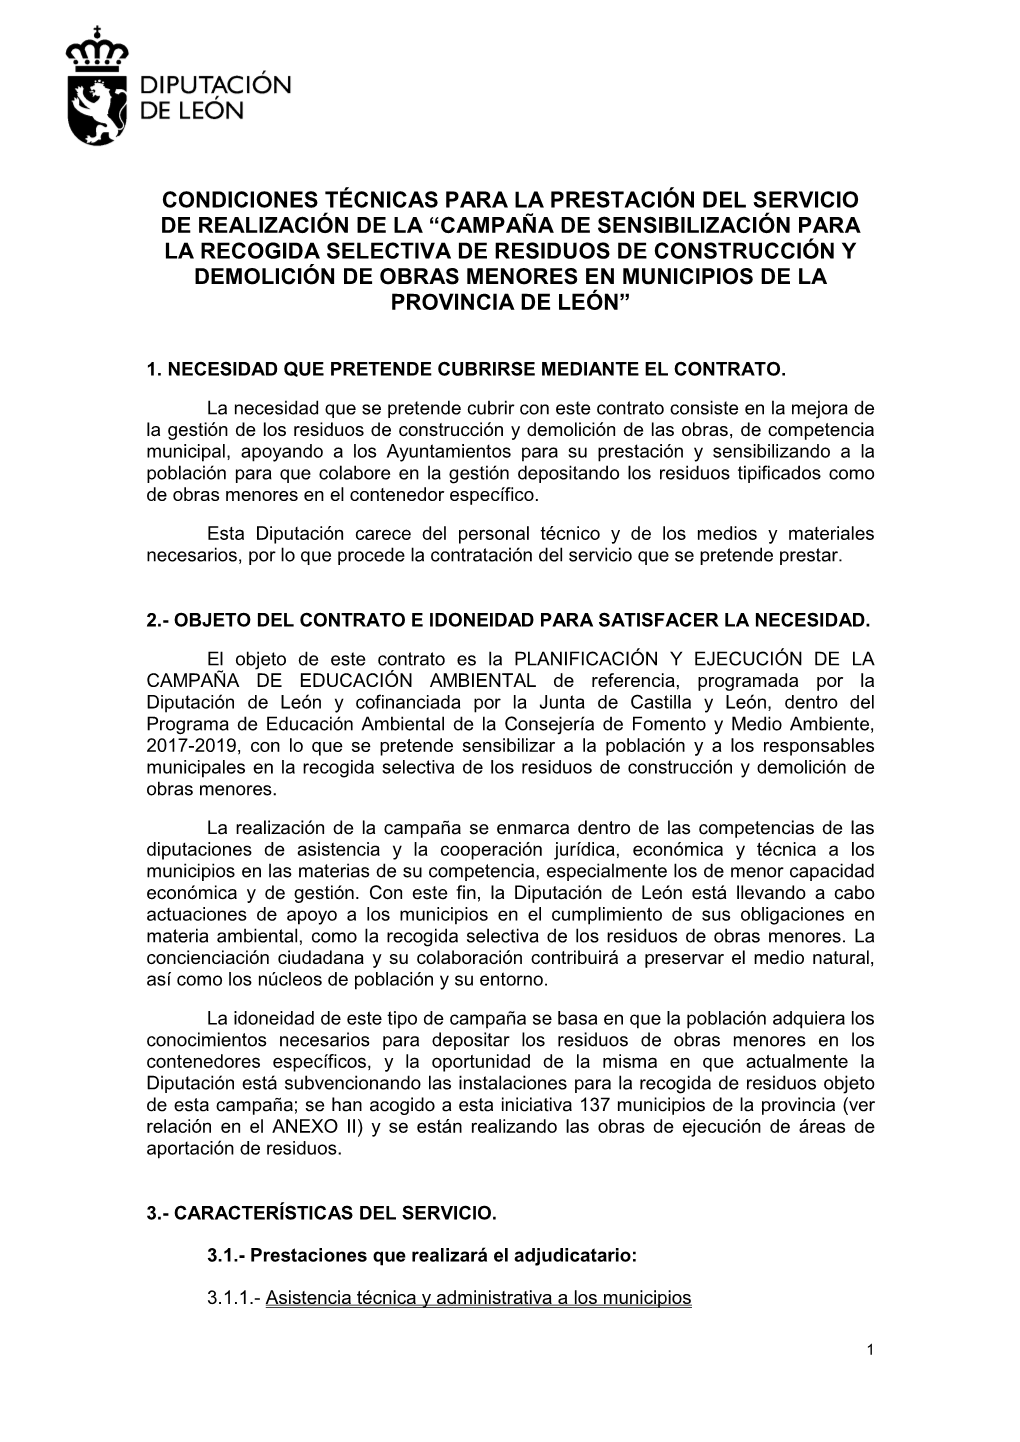 Campaña De Sensibilización Para La Recogida Selectiva De Residuos De Construcción Y Demolición De Obras Menores En Municipios De La Provincia De León”